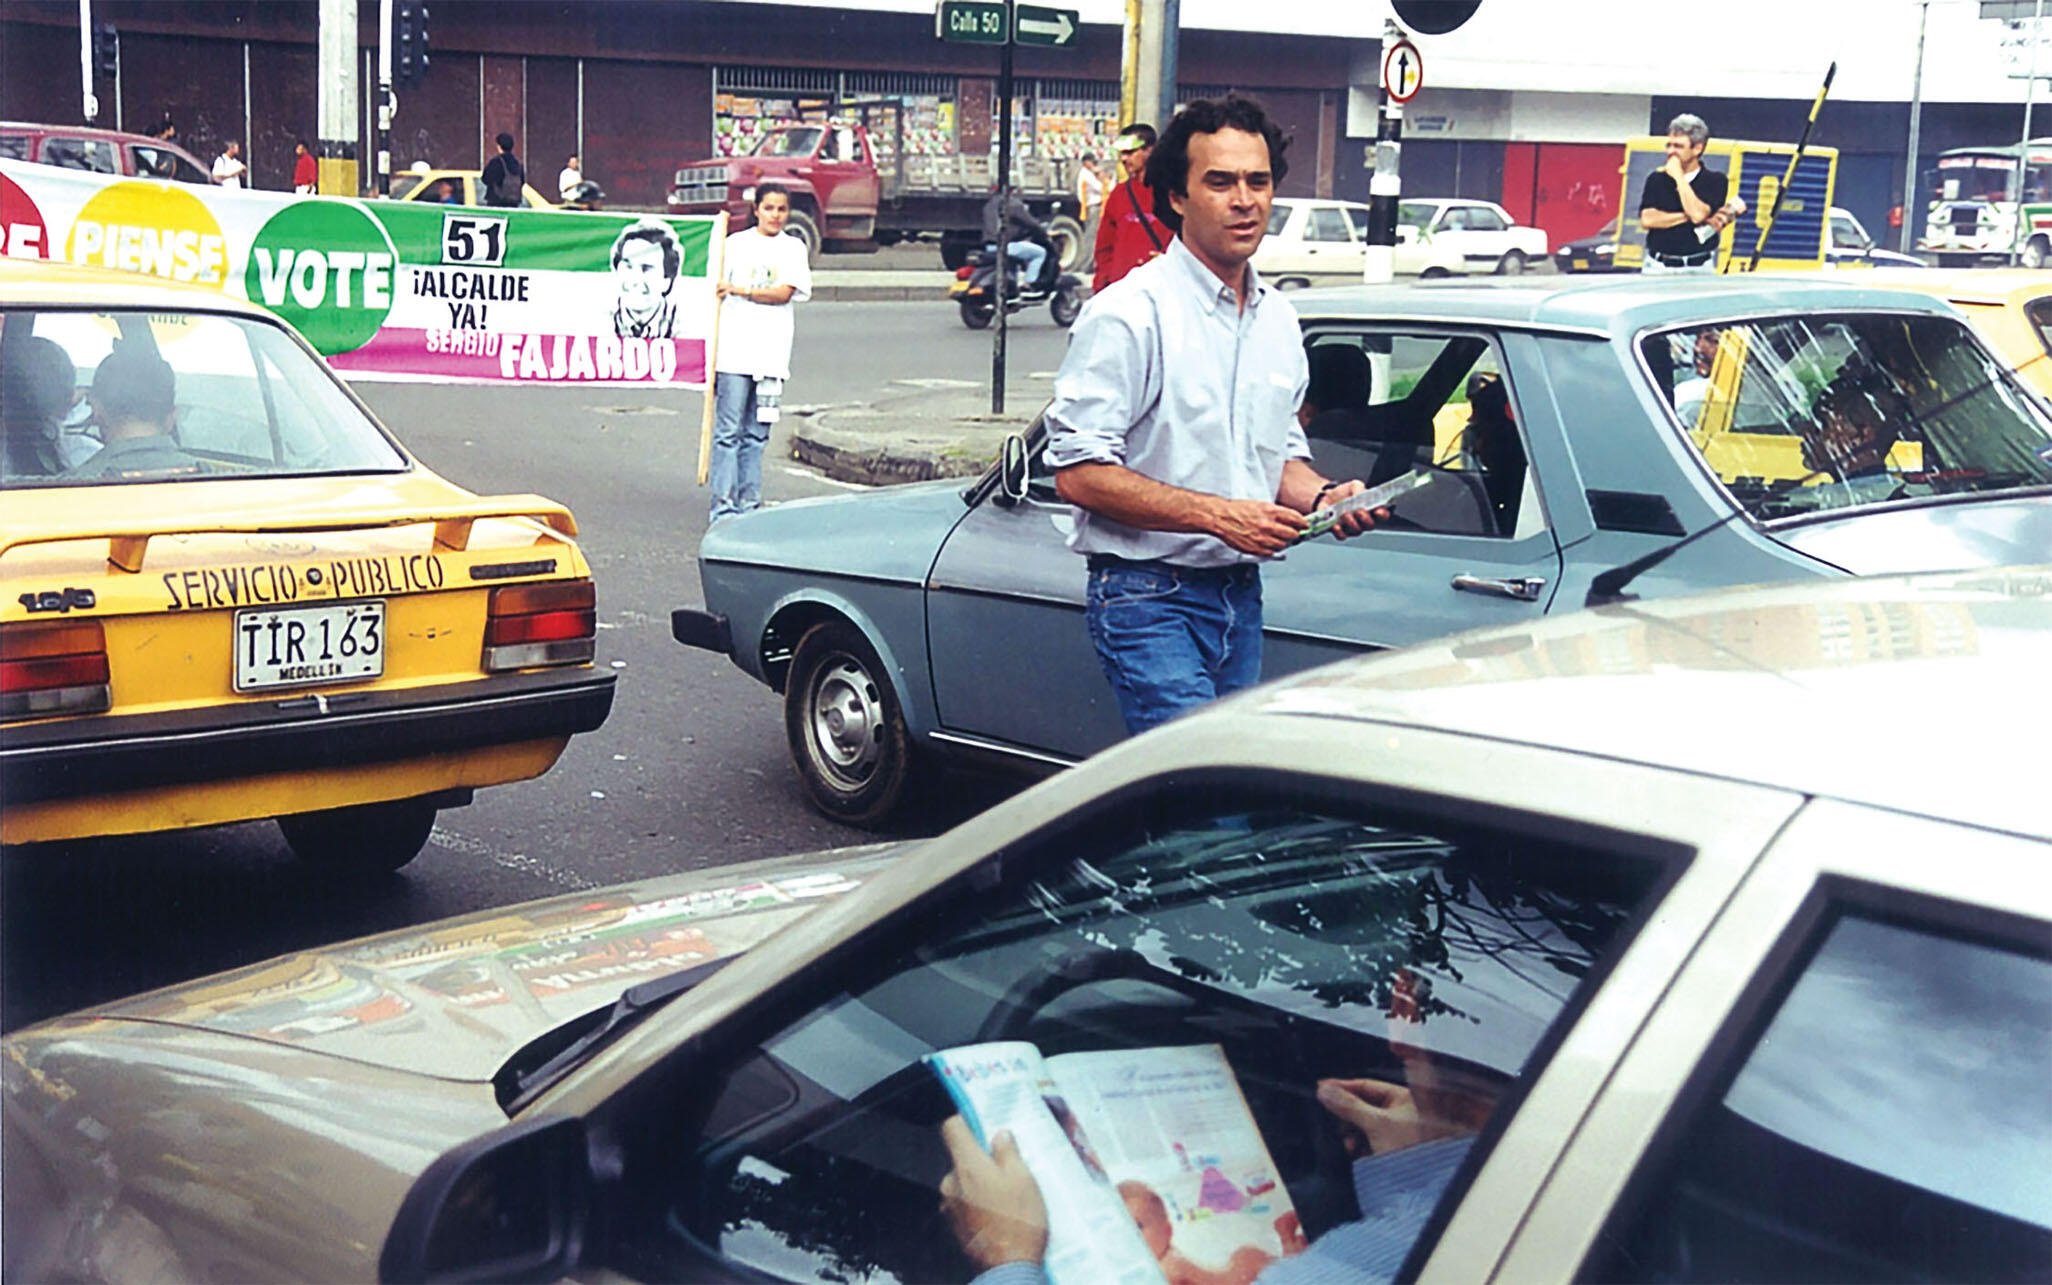 Sergio Fajardo on the campaign trail in Medellín in 1999. (Photo courtesy of Sergio Fajardo.)